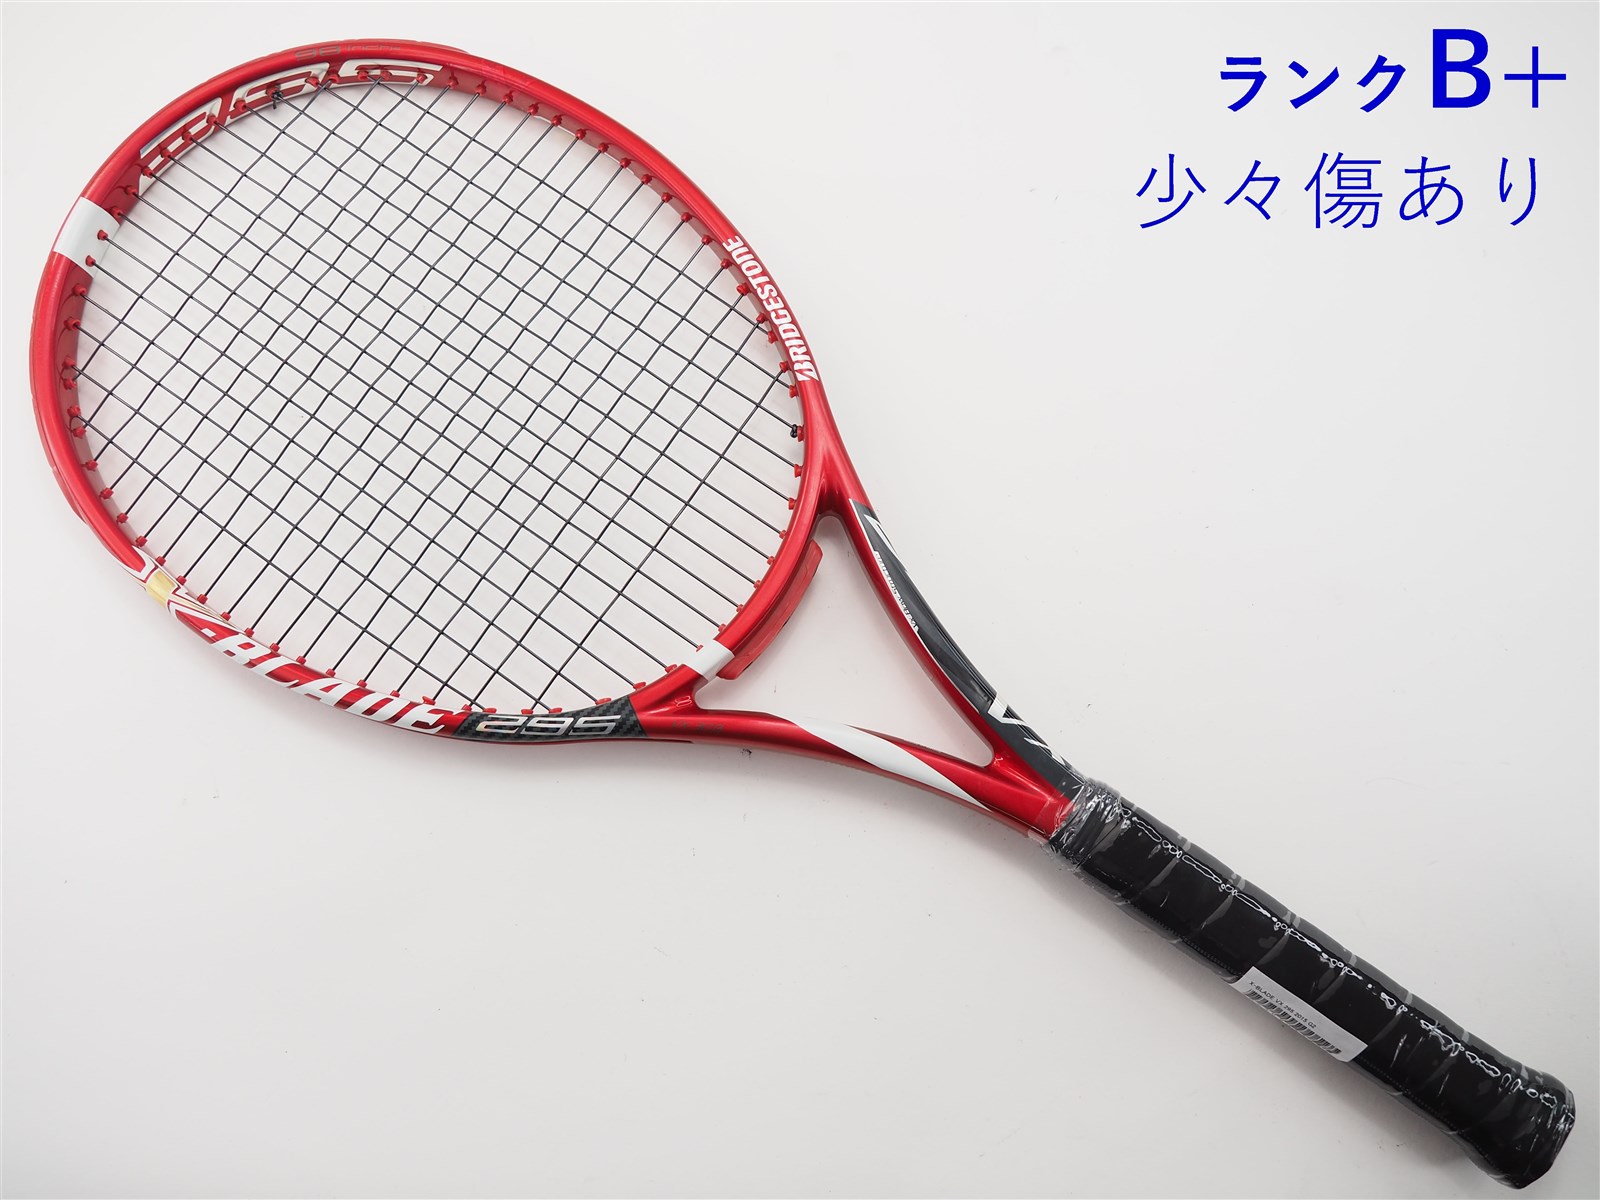 ブリヂストン テニスラケット エックスブレードBX300 G2 - ラケット 